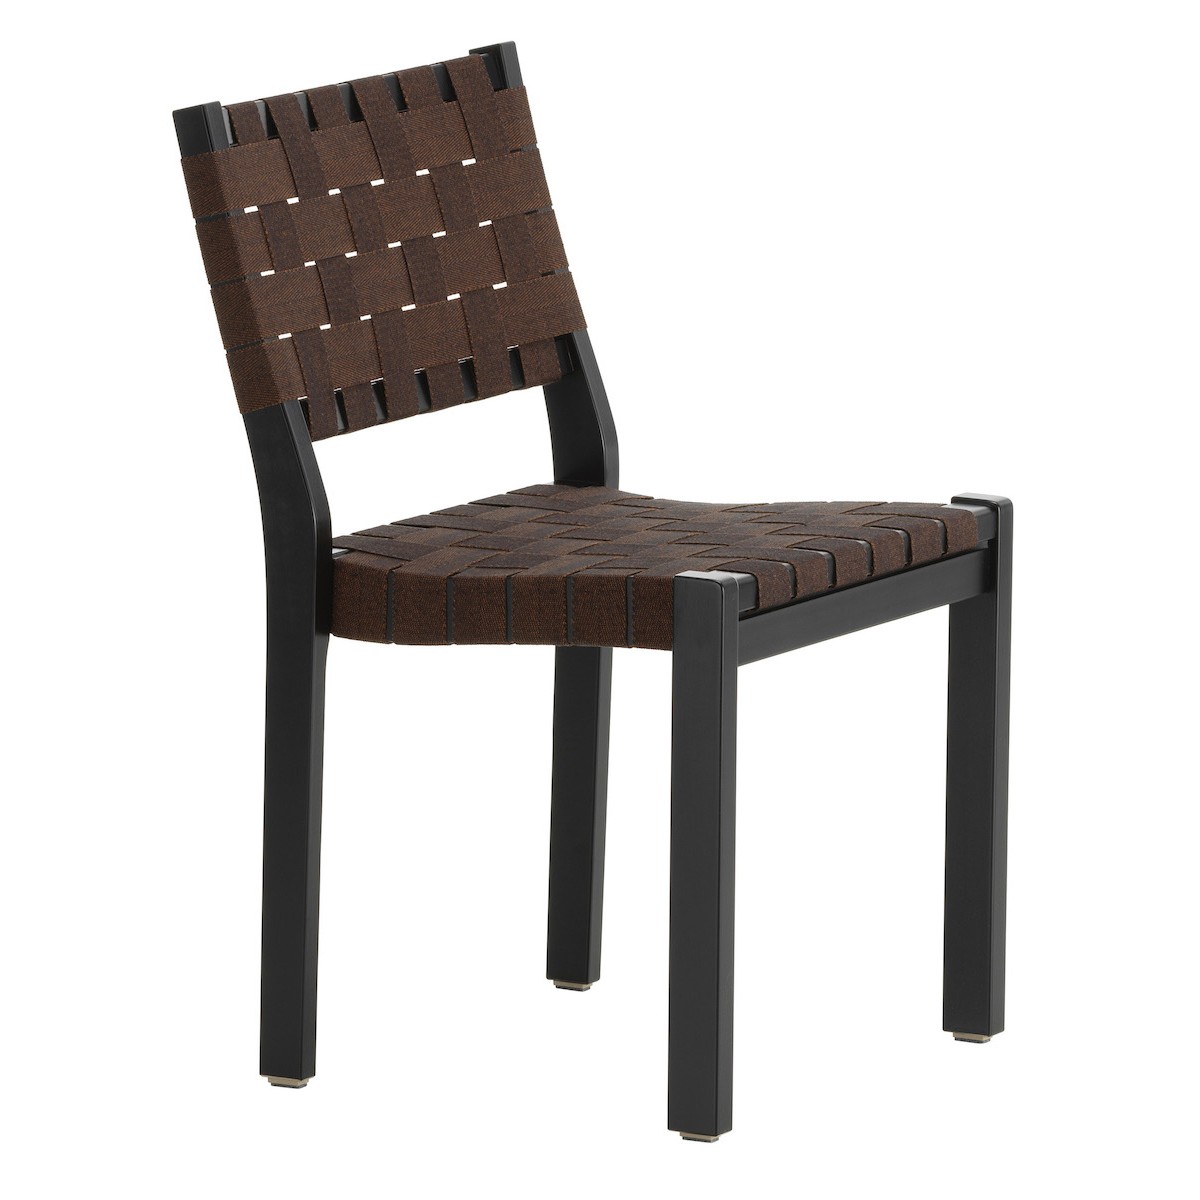 bouleau noir + tressage noir/marron - chaise 611